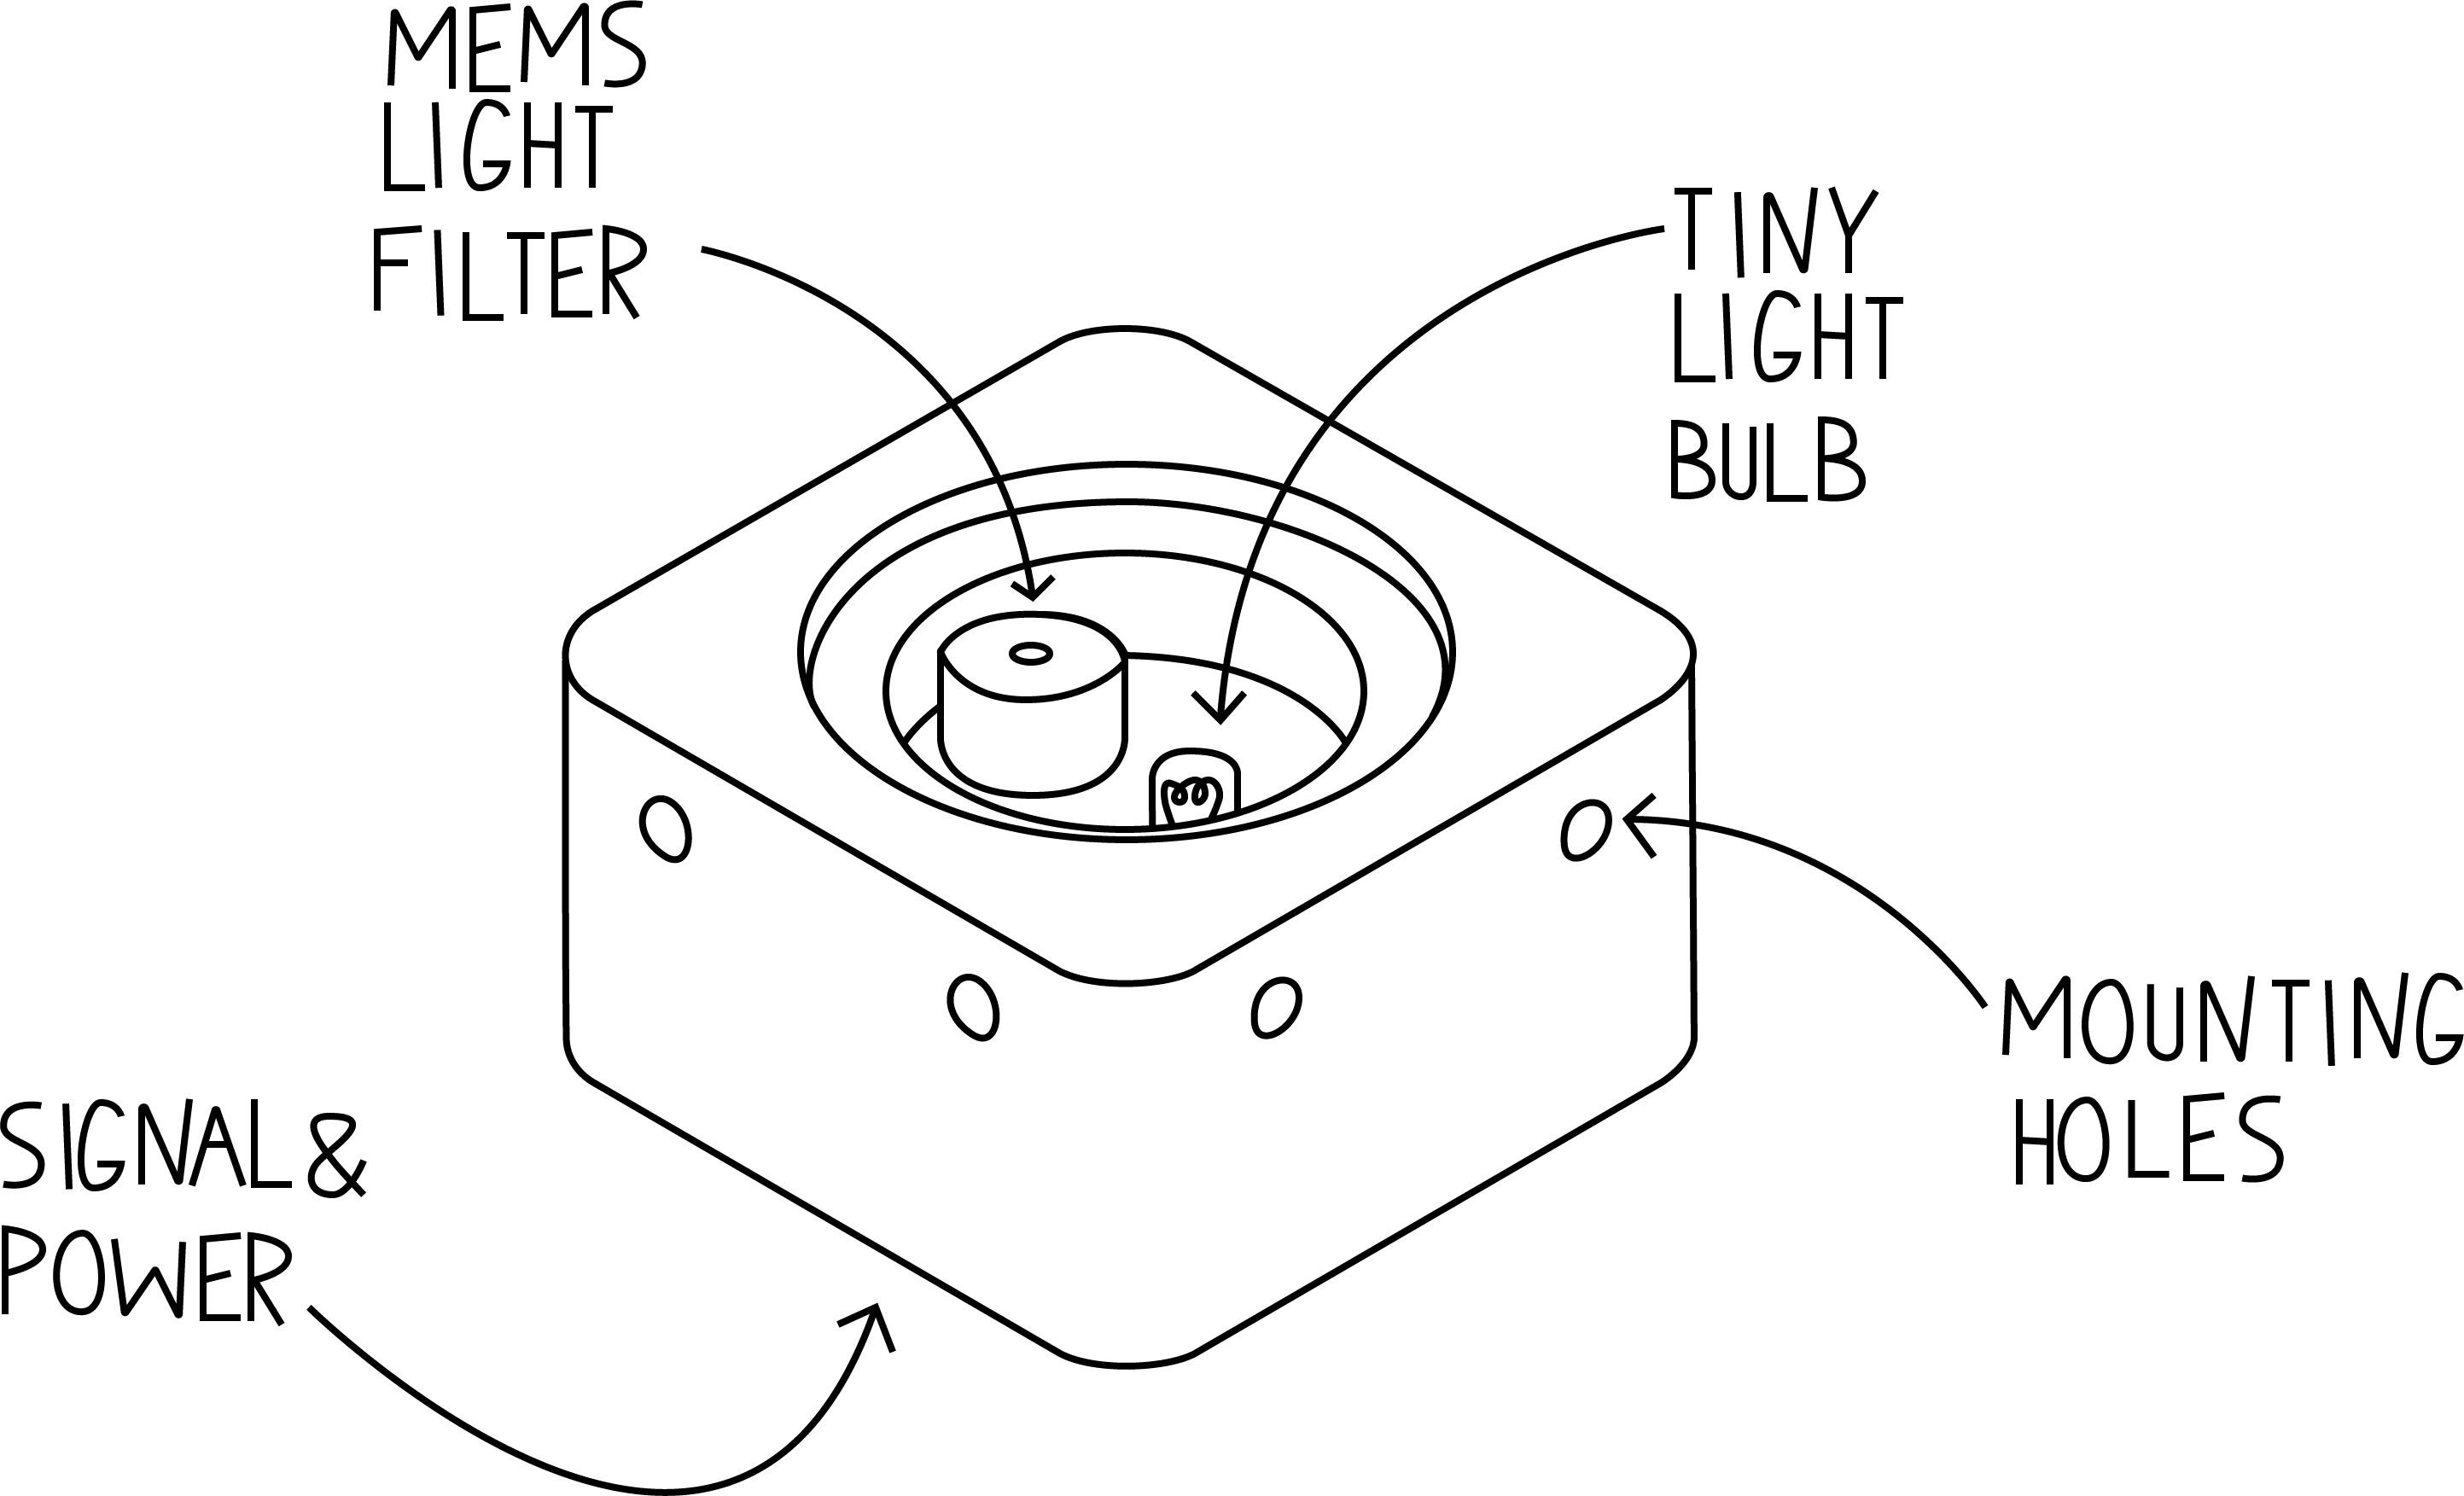 Figure 1: NIR plastic-type Sensor overview sketch